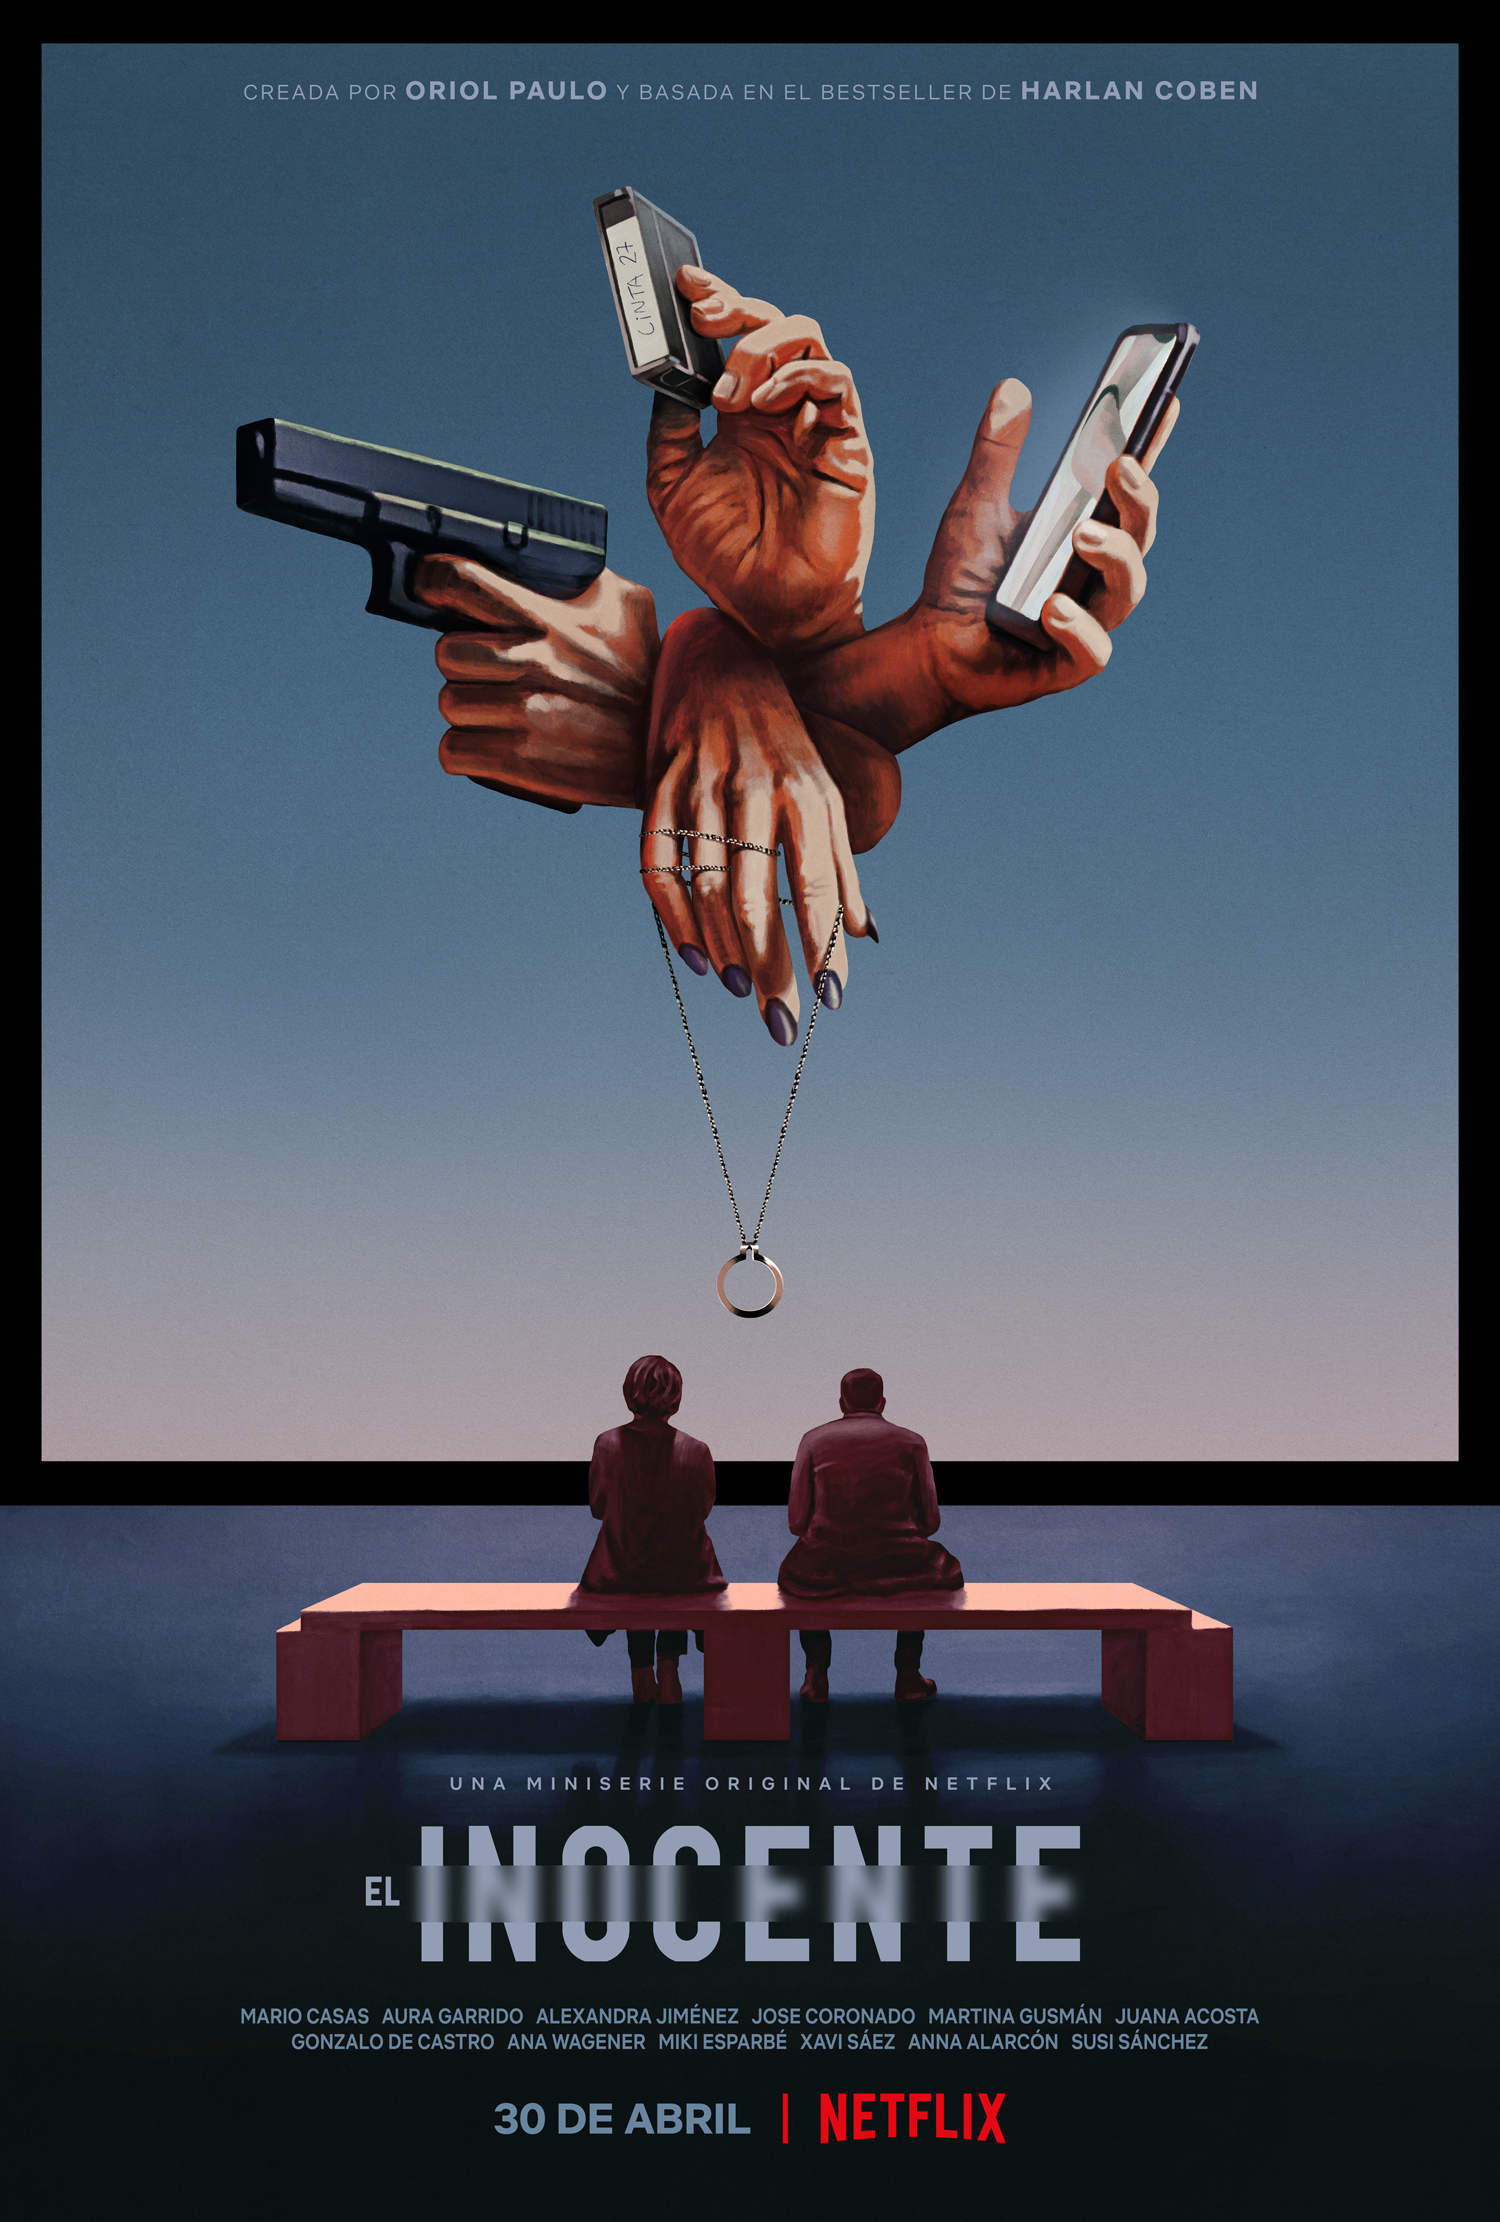 El inocente: netflix lanza trailer y poster oficial